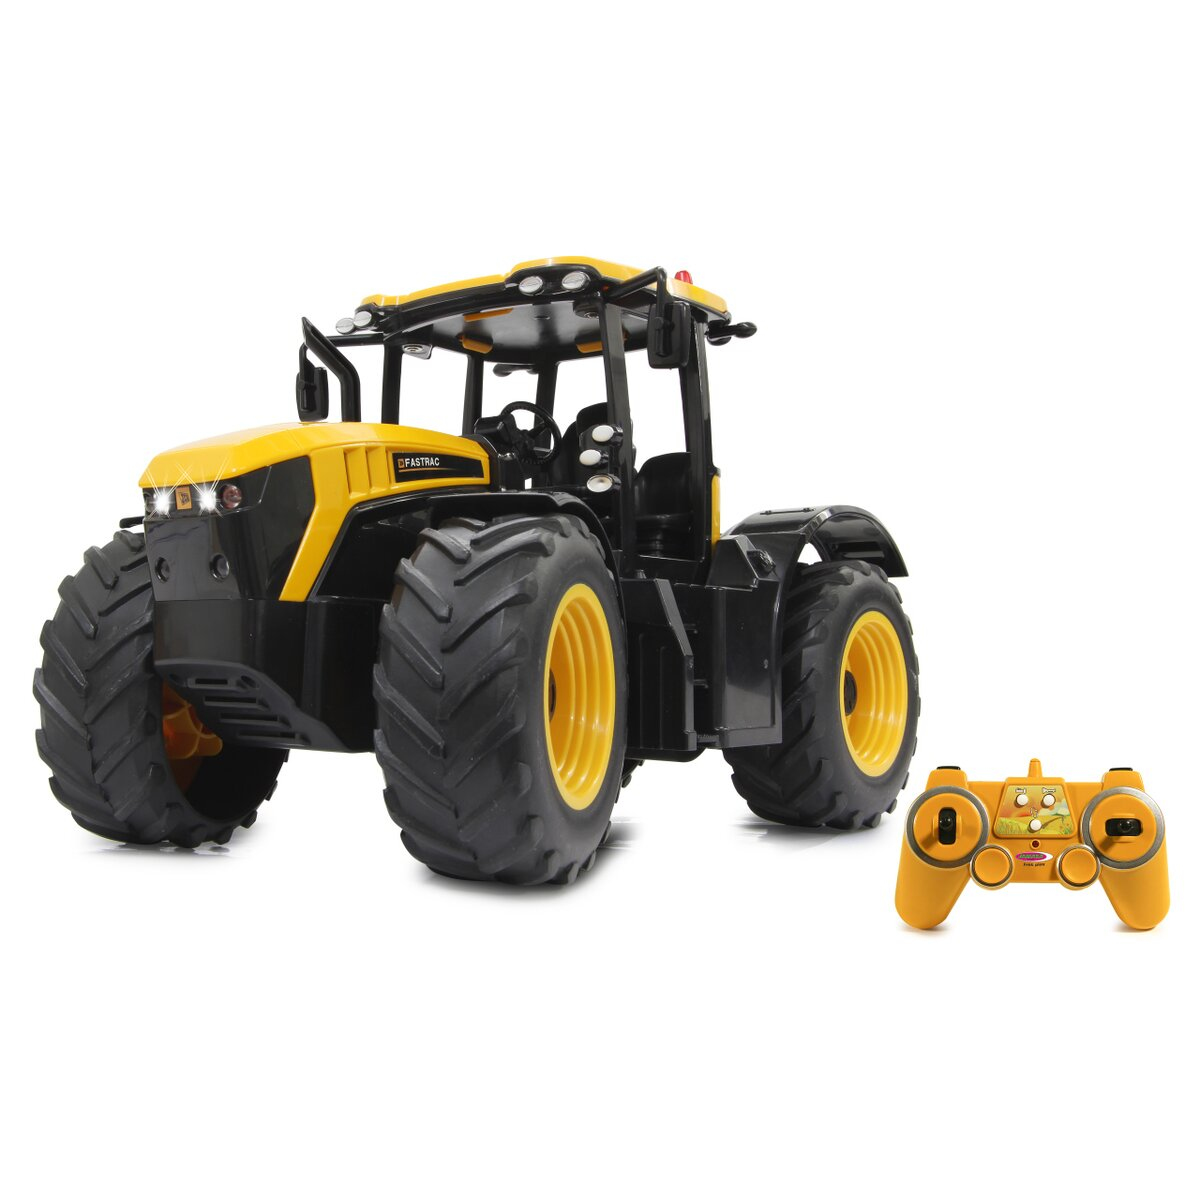 JAMARA 405300 - Traktor - 1:16 - 6 Jahr(e) - 950 g